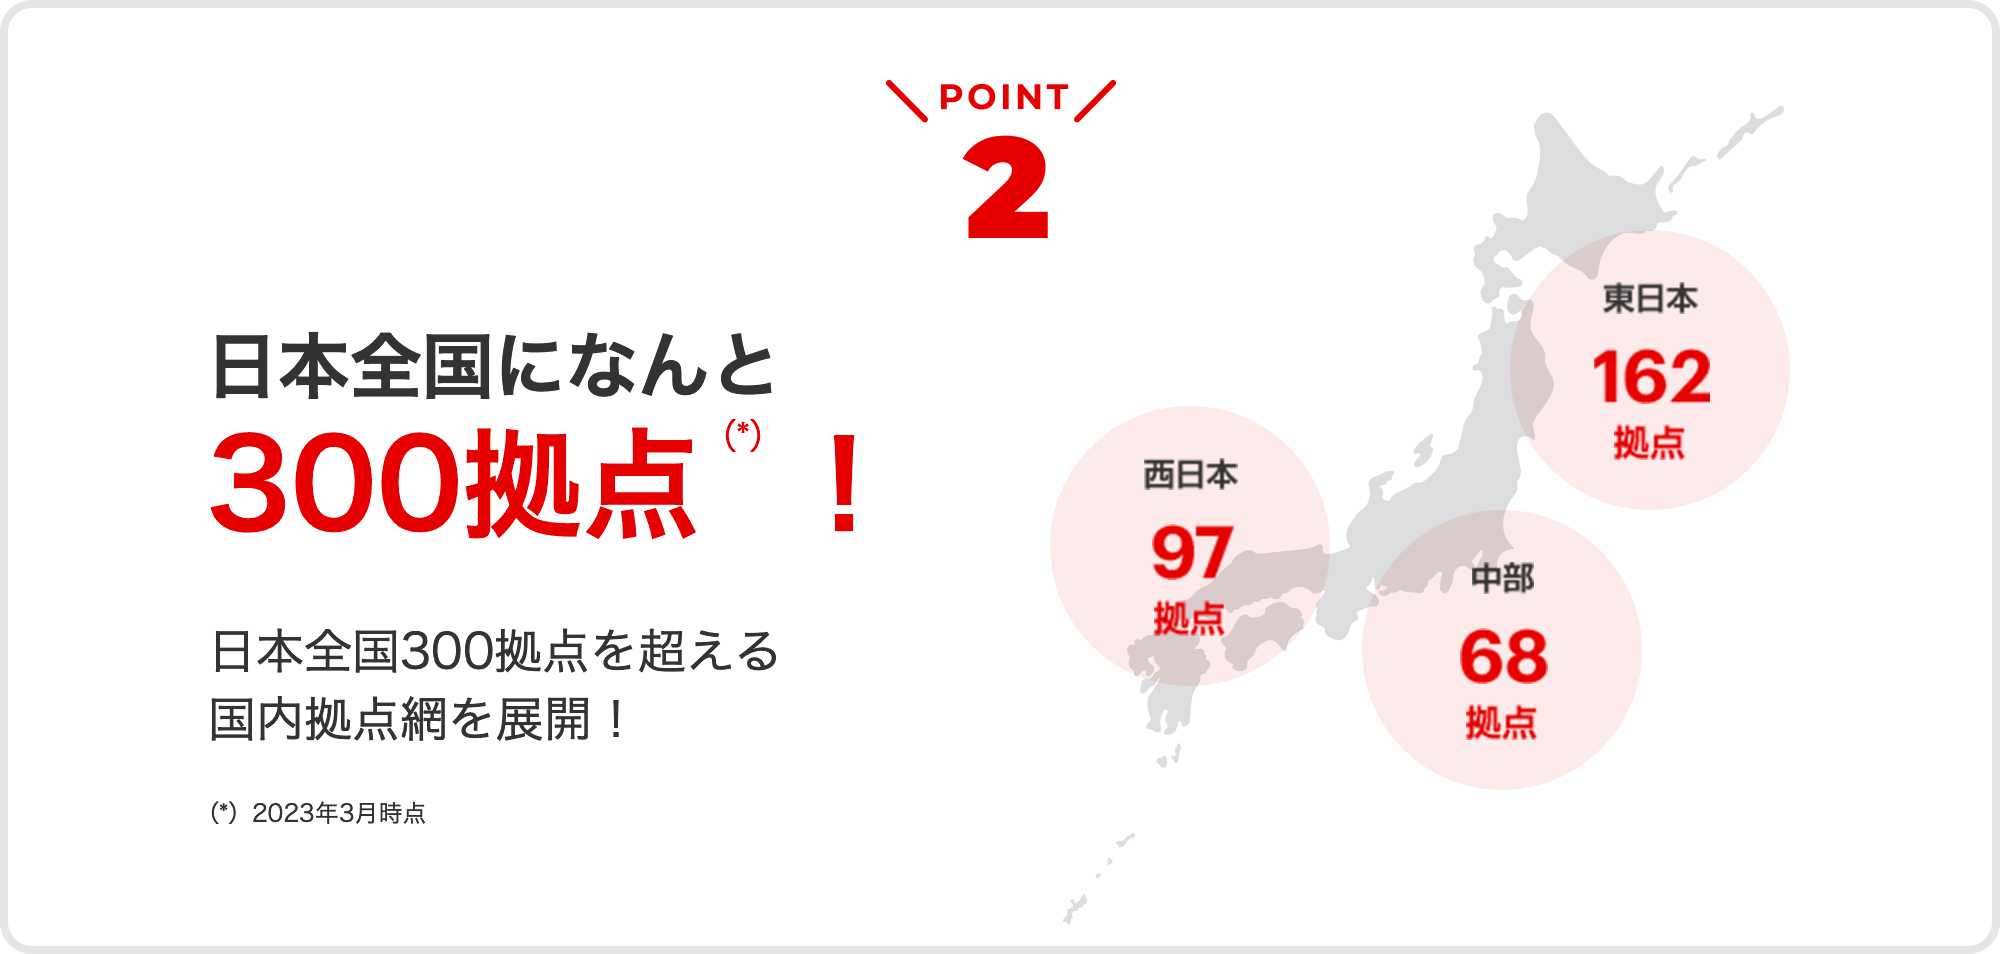 point02 日本全国になんと300拠点!